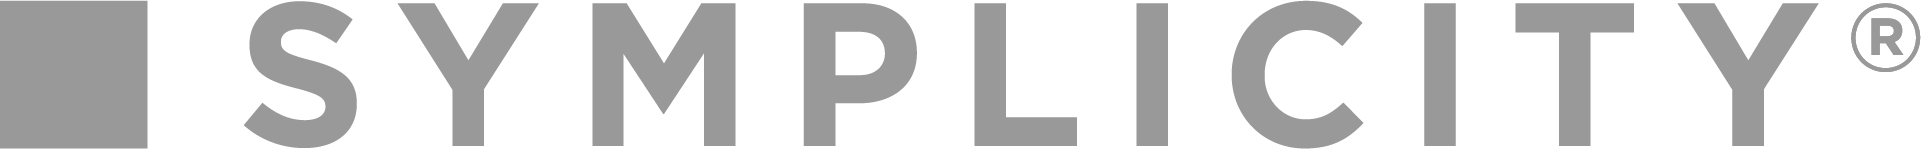 logo_digital_symplicity_reg_gray